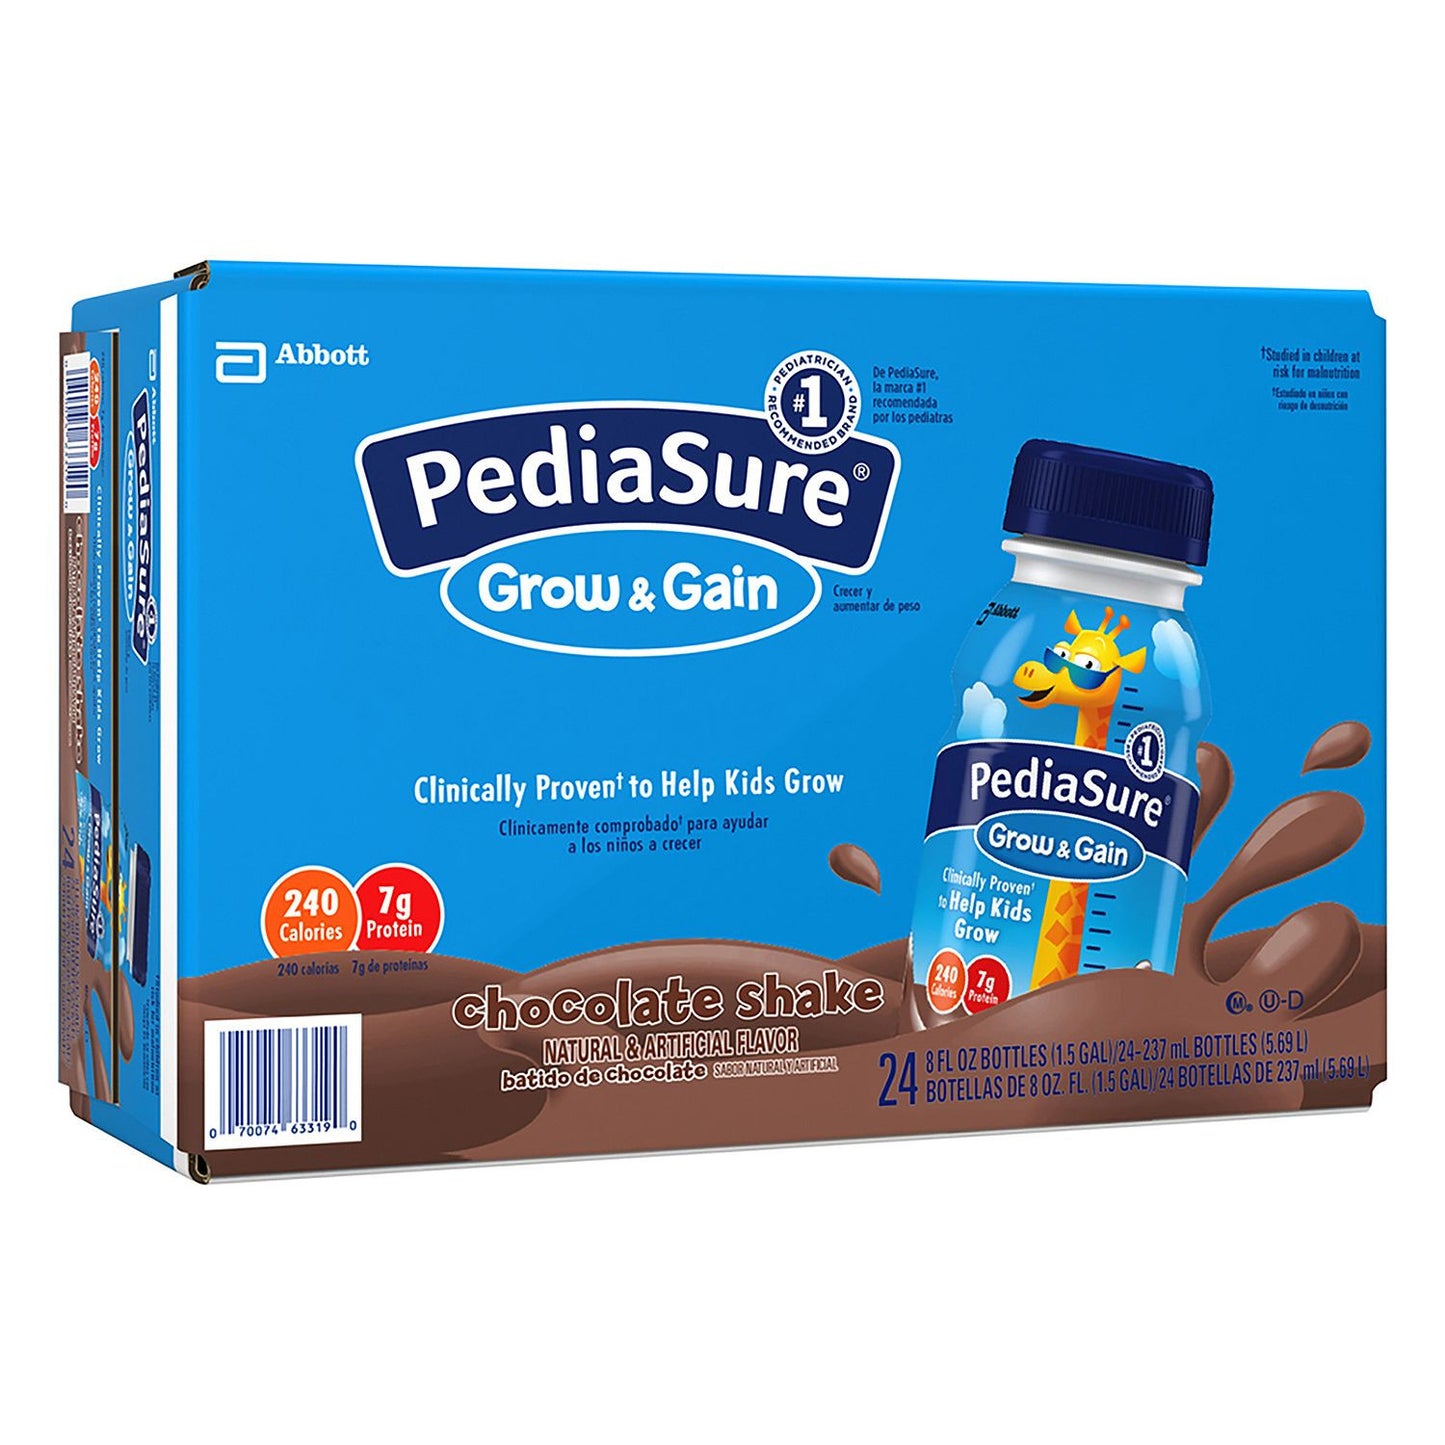 PediaSure Chocolate Shake - 8 oz. bottles - 24 pk.